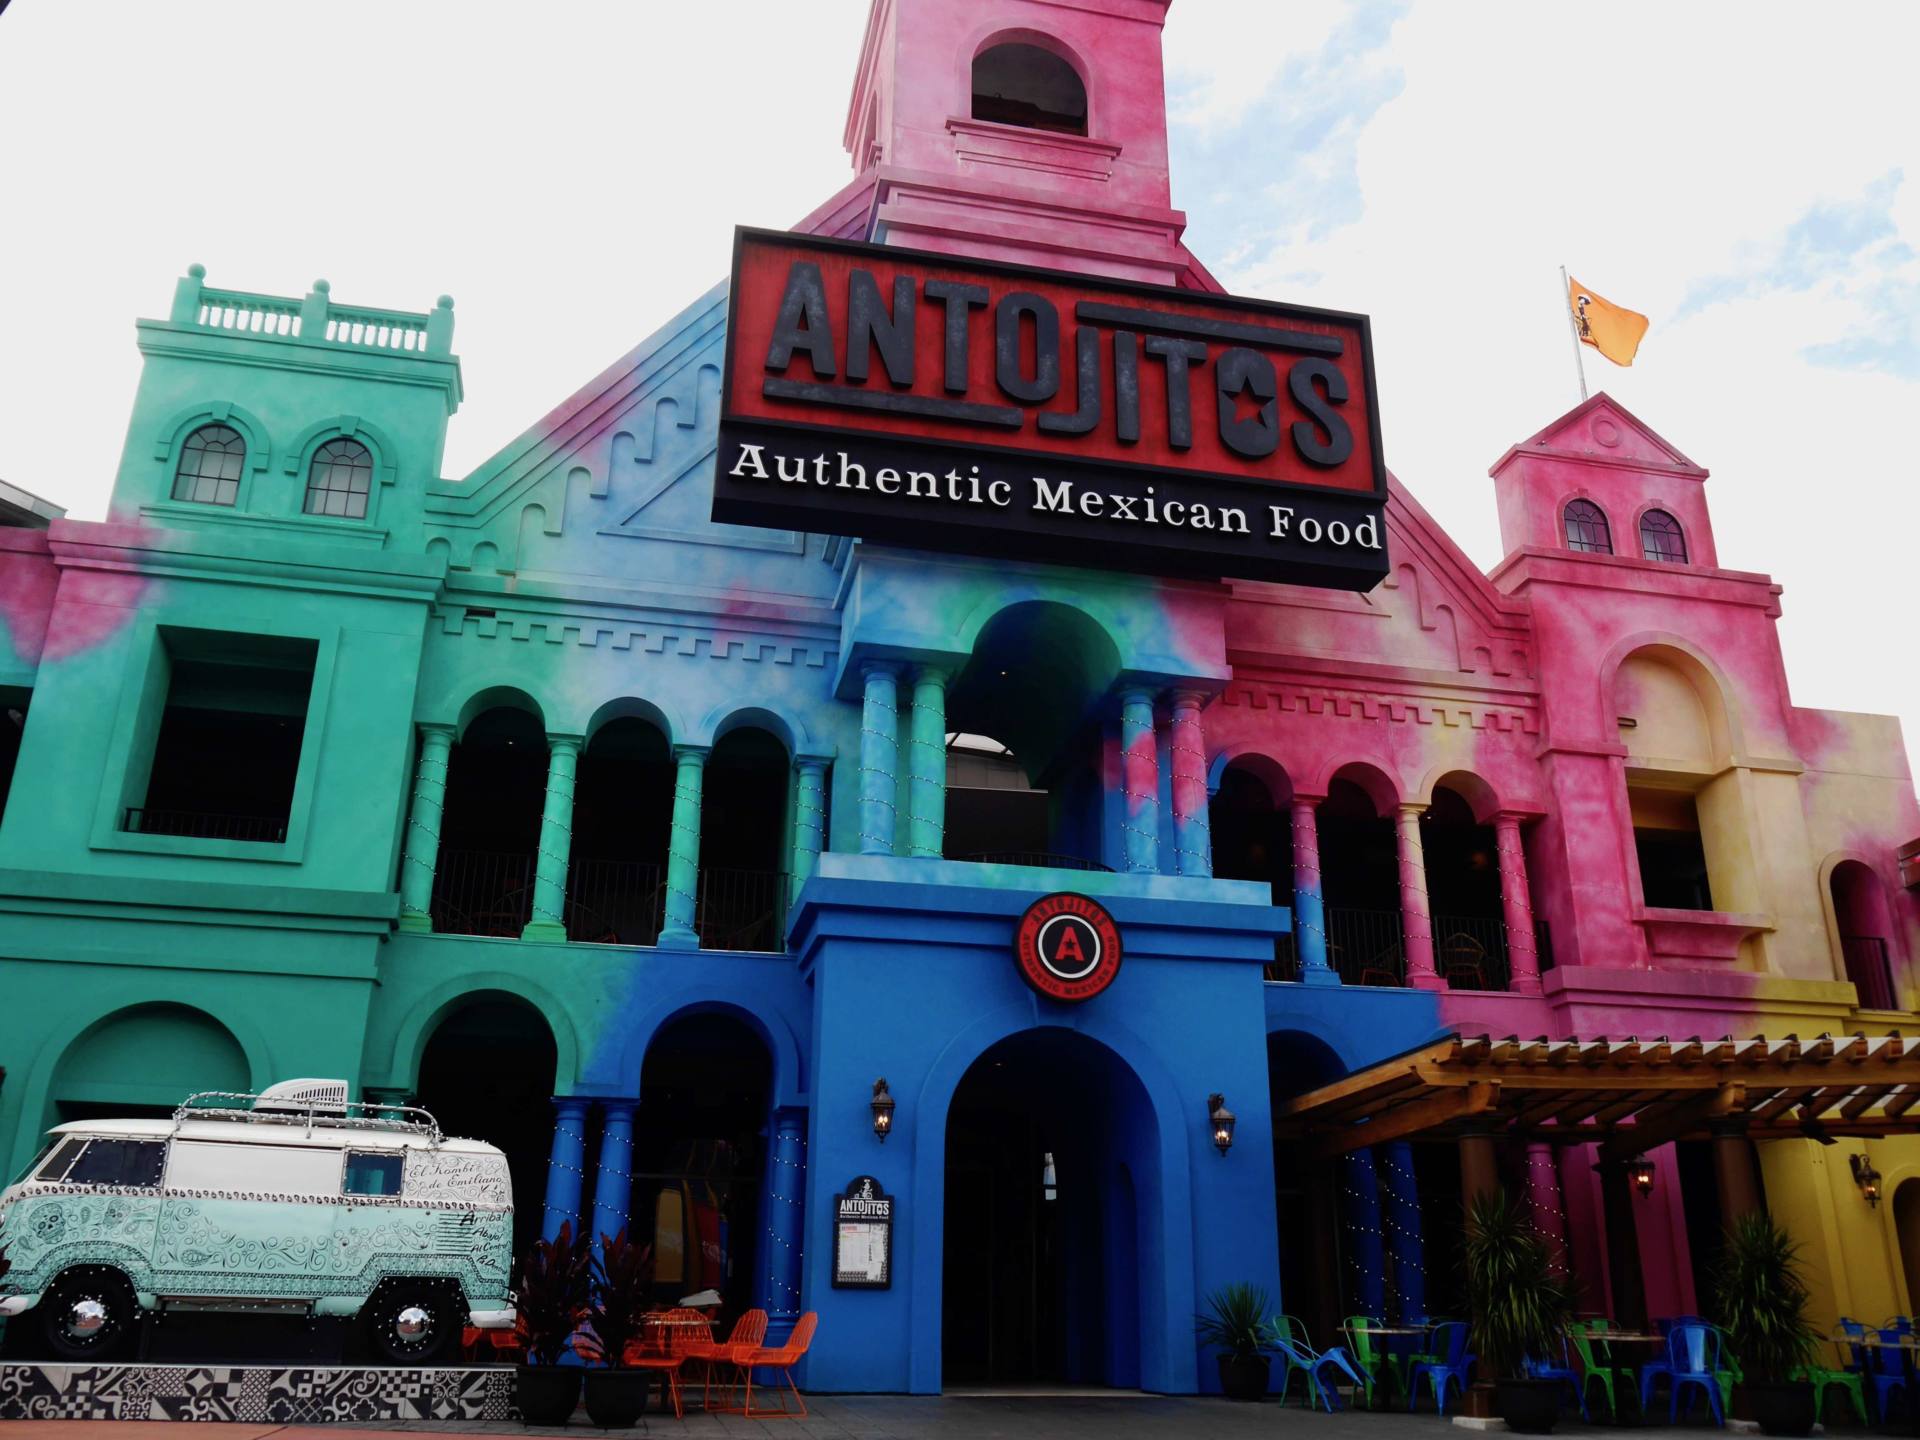 Paseo por la ciudad de Antojitos, Universal Orlando Resort